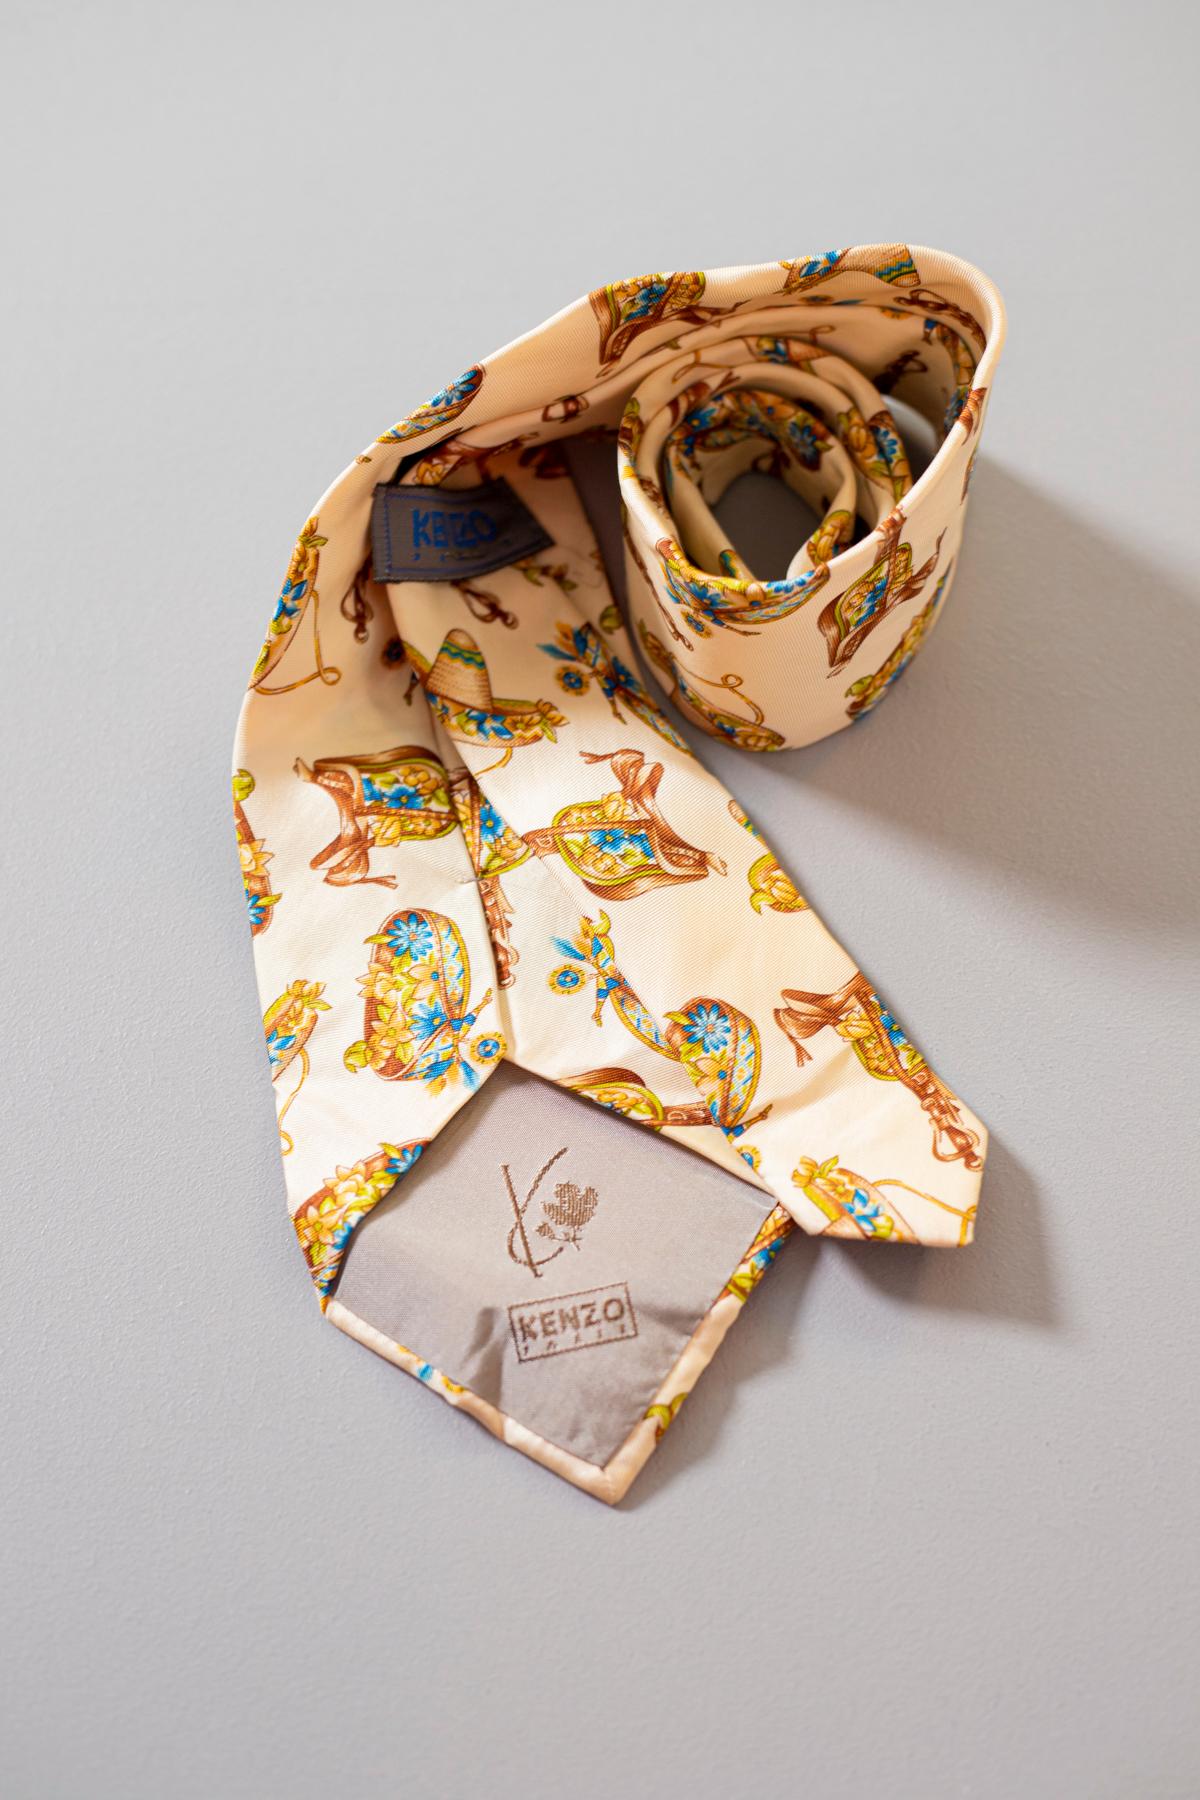 Diese besondere und skurrile Krawatte von Kenzo ist aus Seide gefertigt. Verziert mit besonderen Motiven, darunter Sombreros, auf einem hellbeigen Hintergrund. Dieses Accessoire ist perfekt für eine Person mit einem besonderen und extravaganten